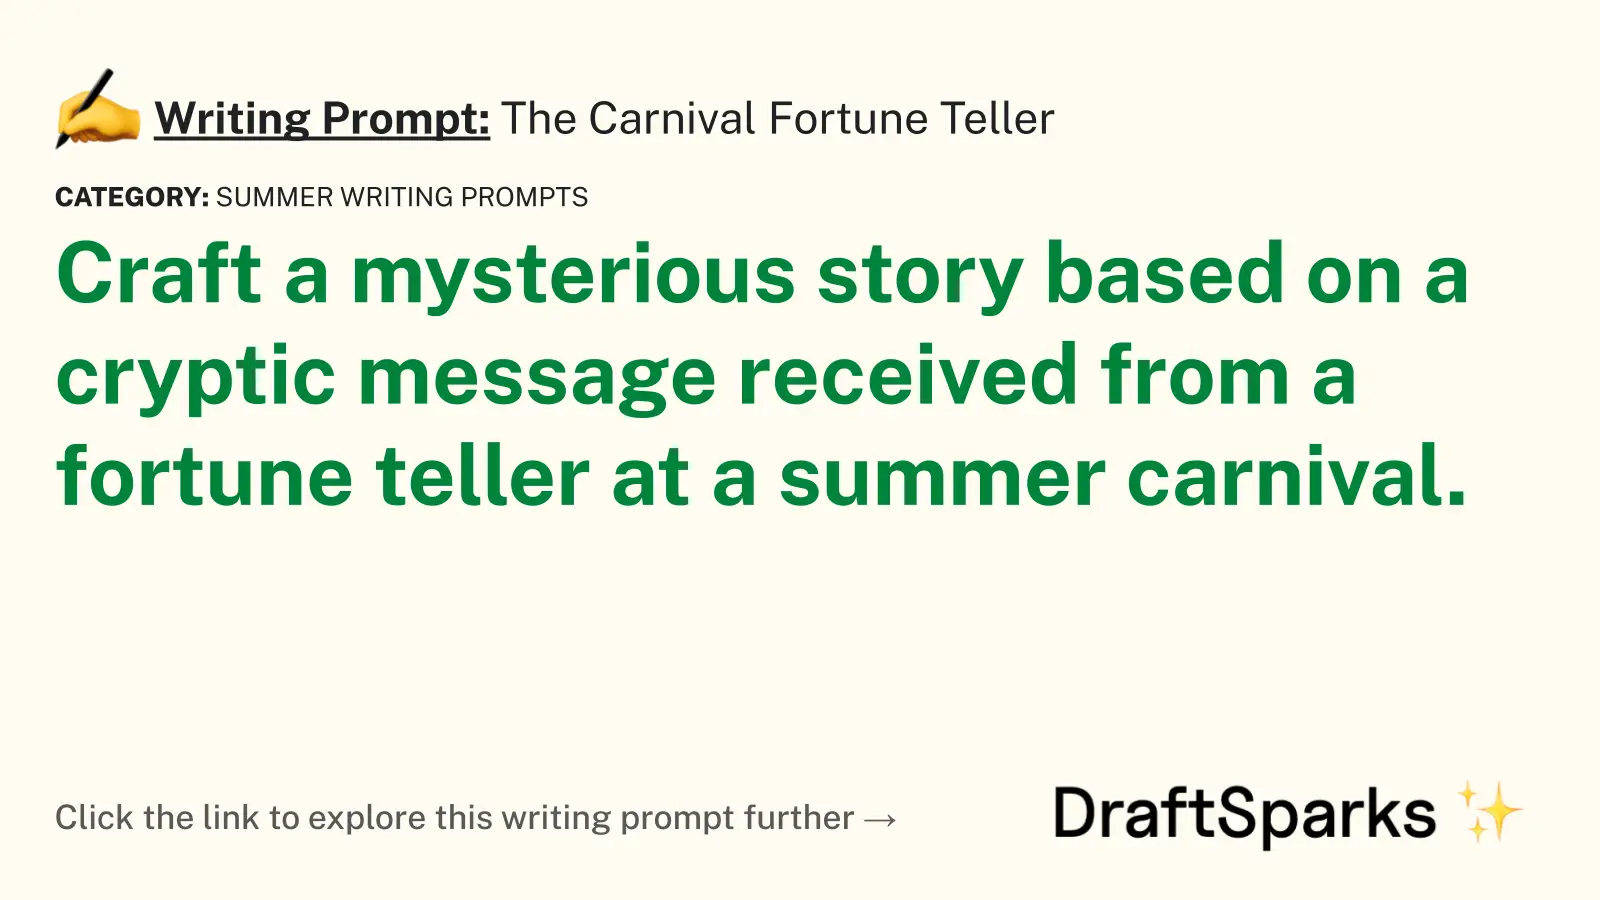 The Carnival Fortune Teller